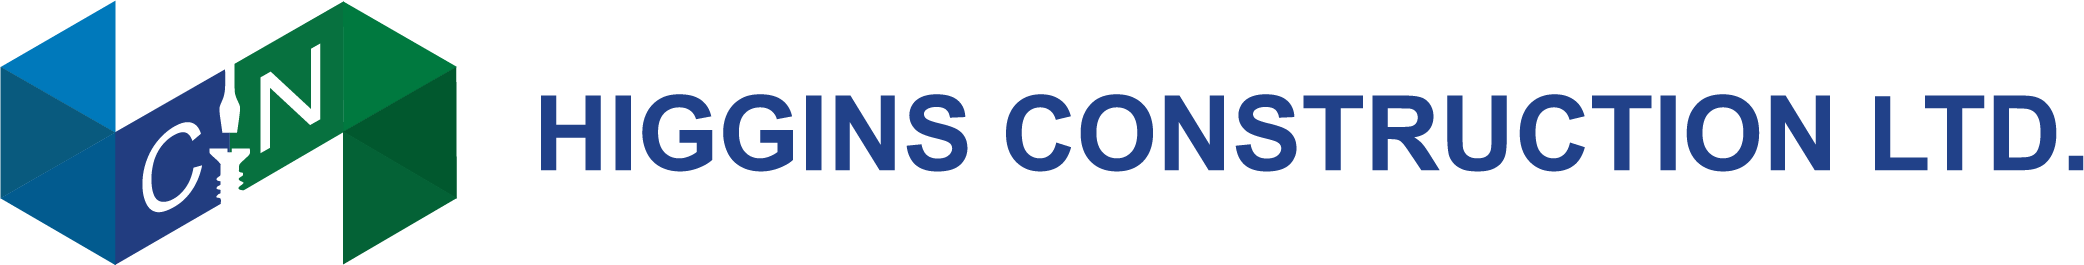 wide logo blue text